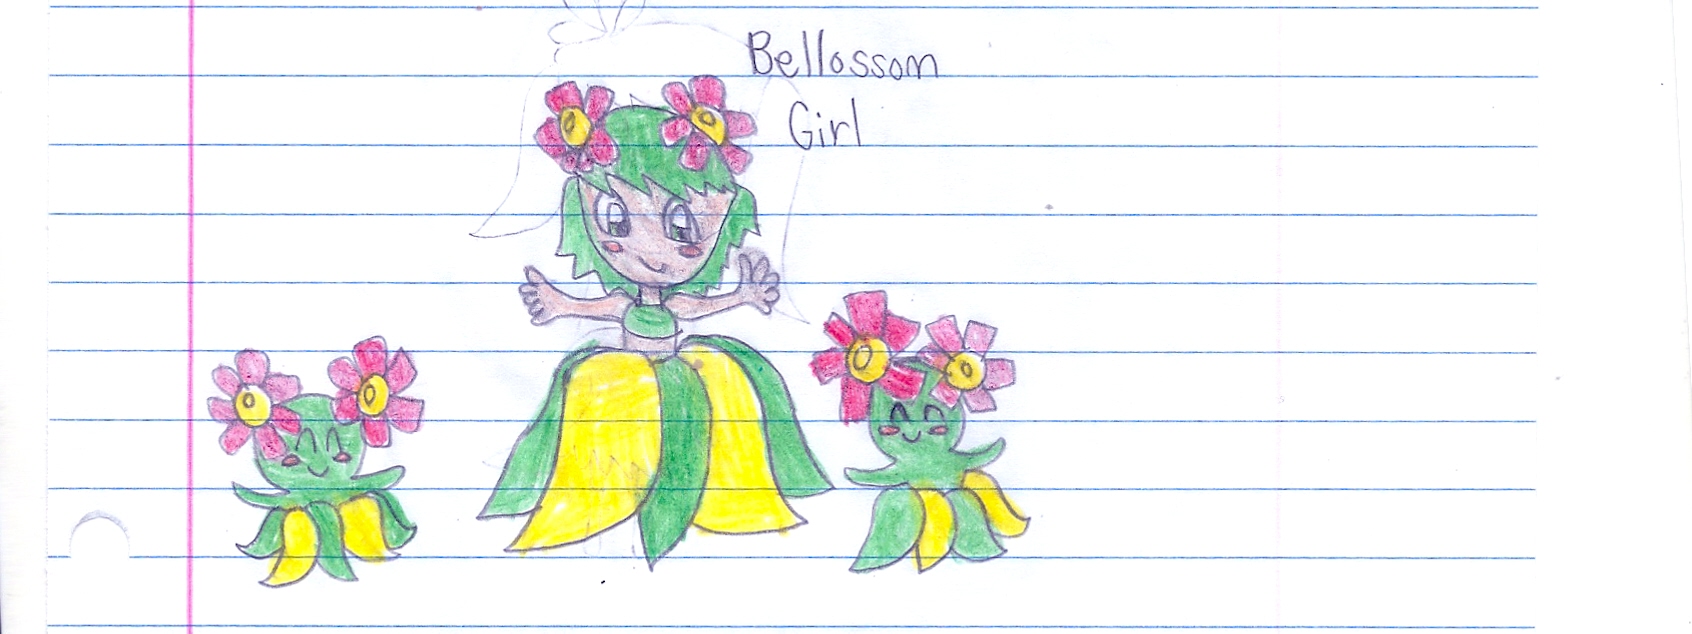 bellossom girl 80001.jpg